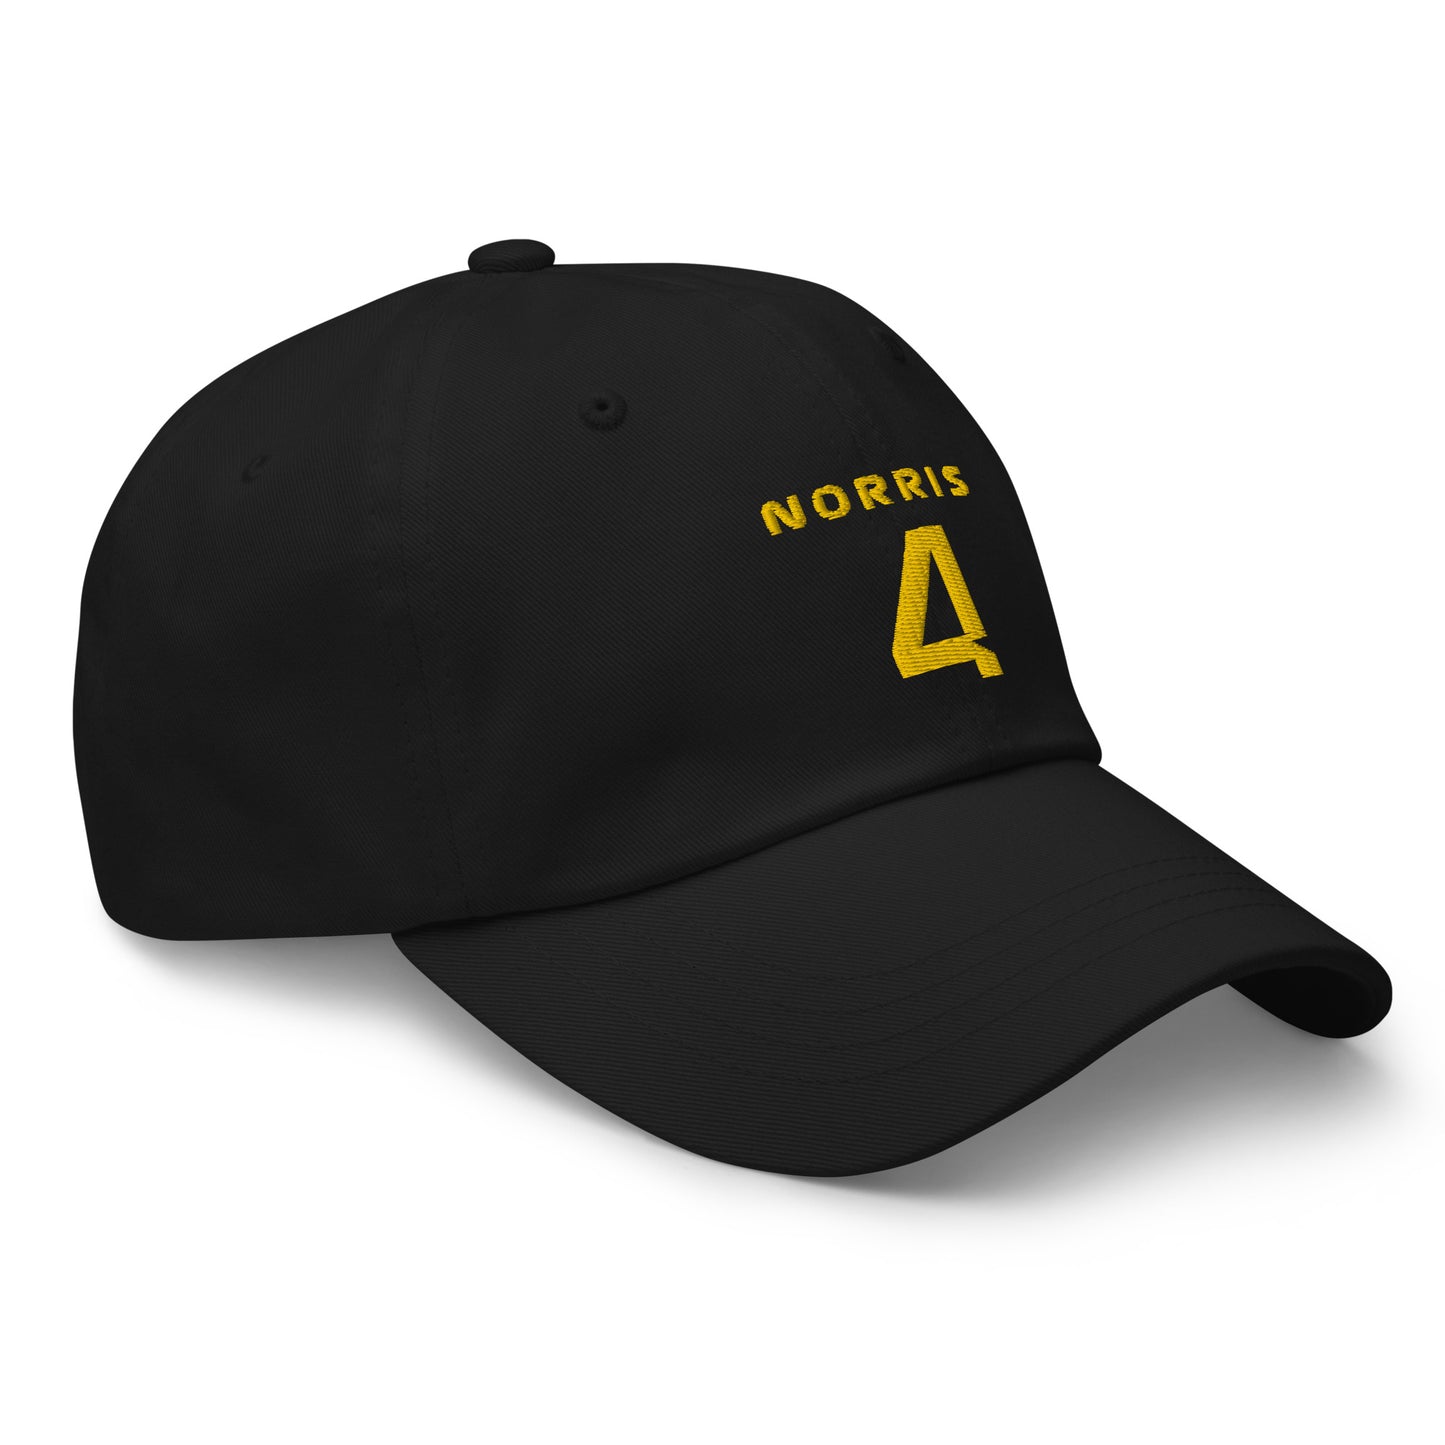 Lando Norris 4 Hat black